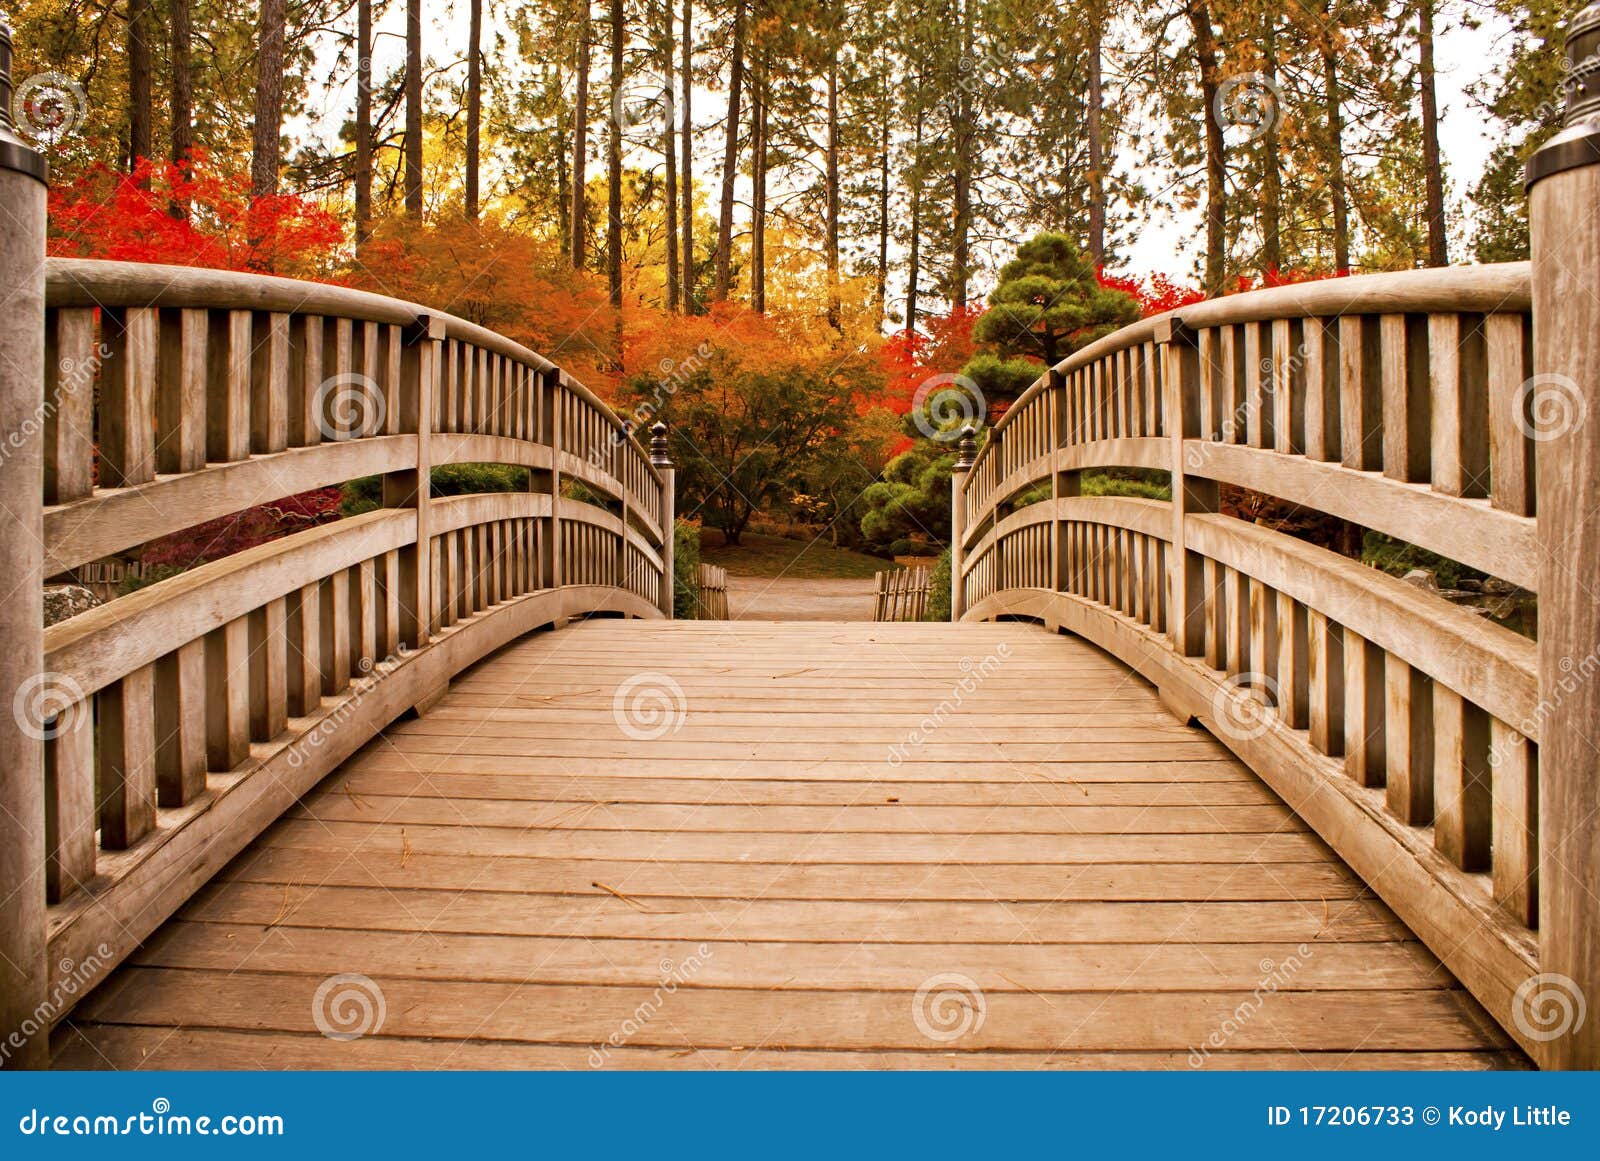 Ponte japonesa do jardim imagem de stock. Imagem de jardim - 17206733